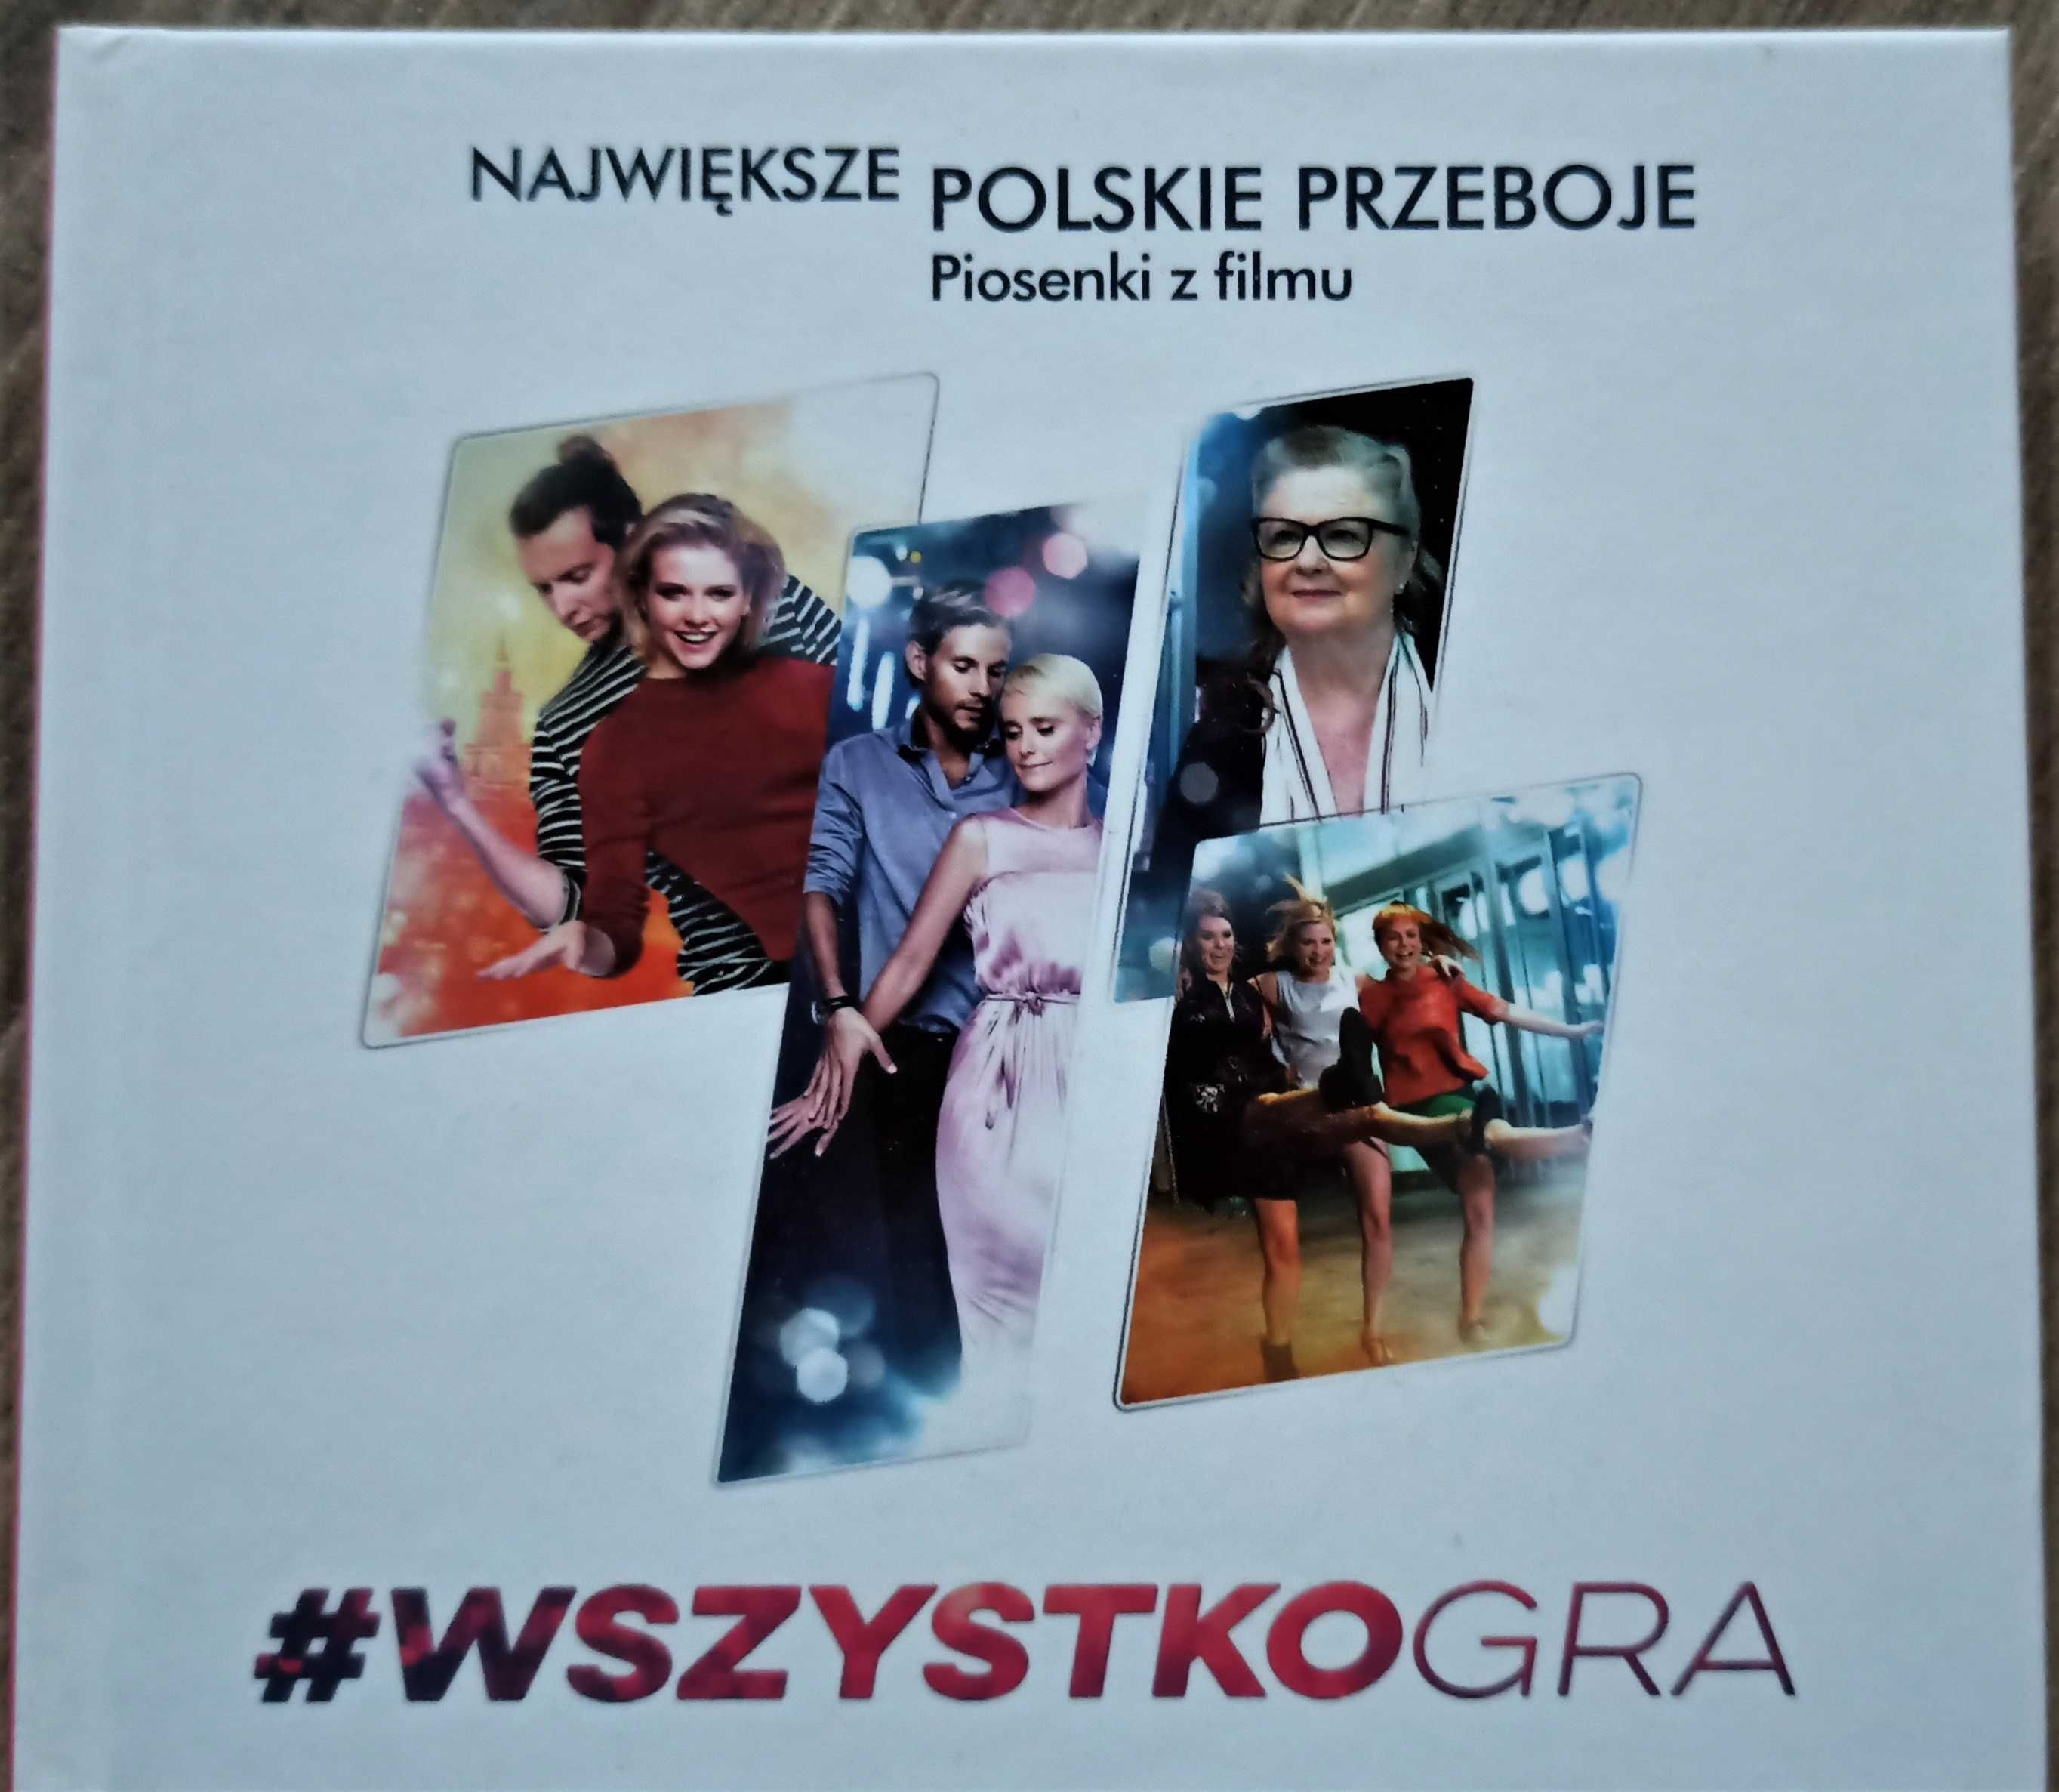 WSZYSTKO GRA - największe polskie przeboje - piosenki filmowe